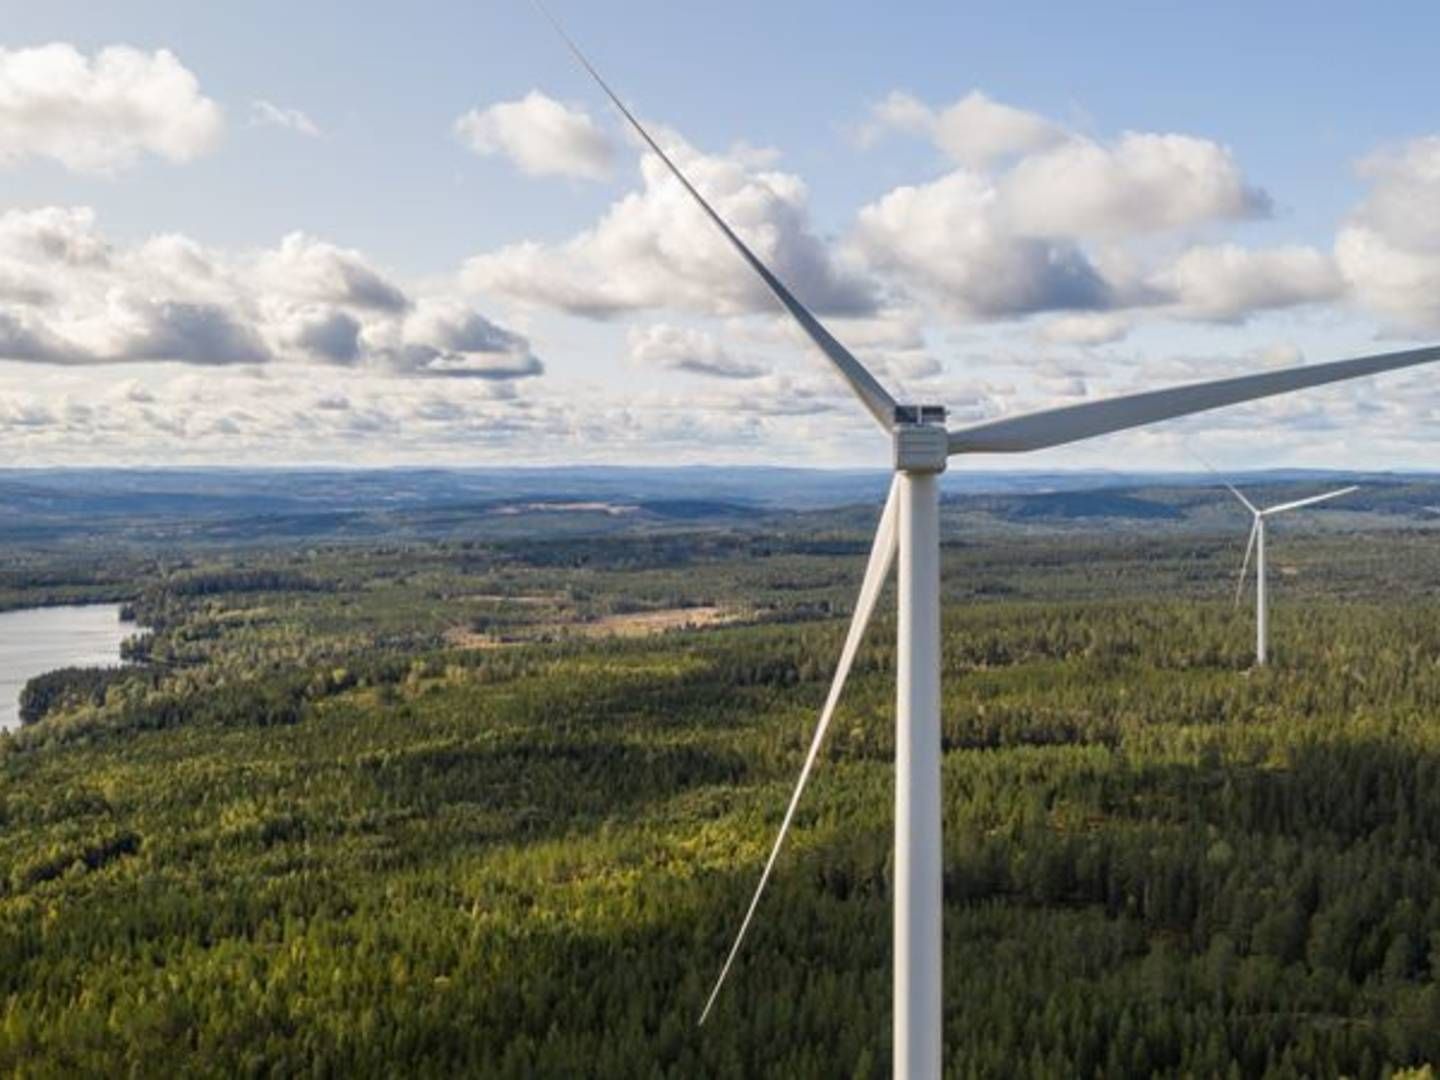 Orrberget på 33 MW er en af de svenske vindparker, som blev sat i drift i første kvartal 2020. | Foto: PR / OX2